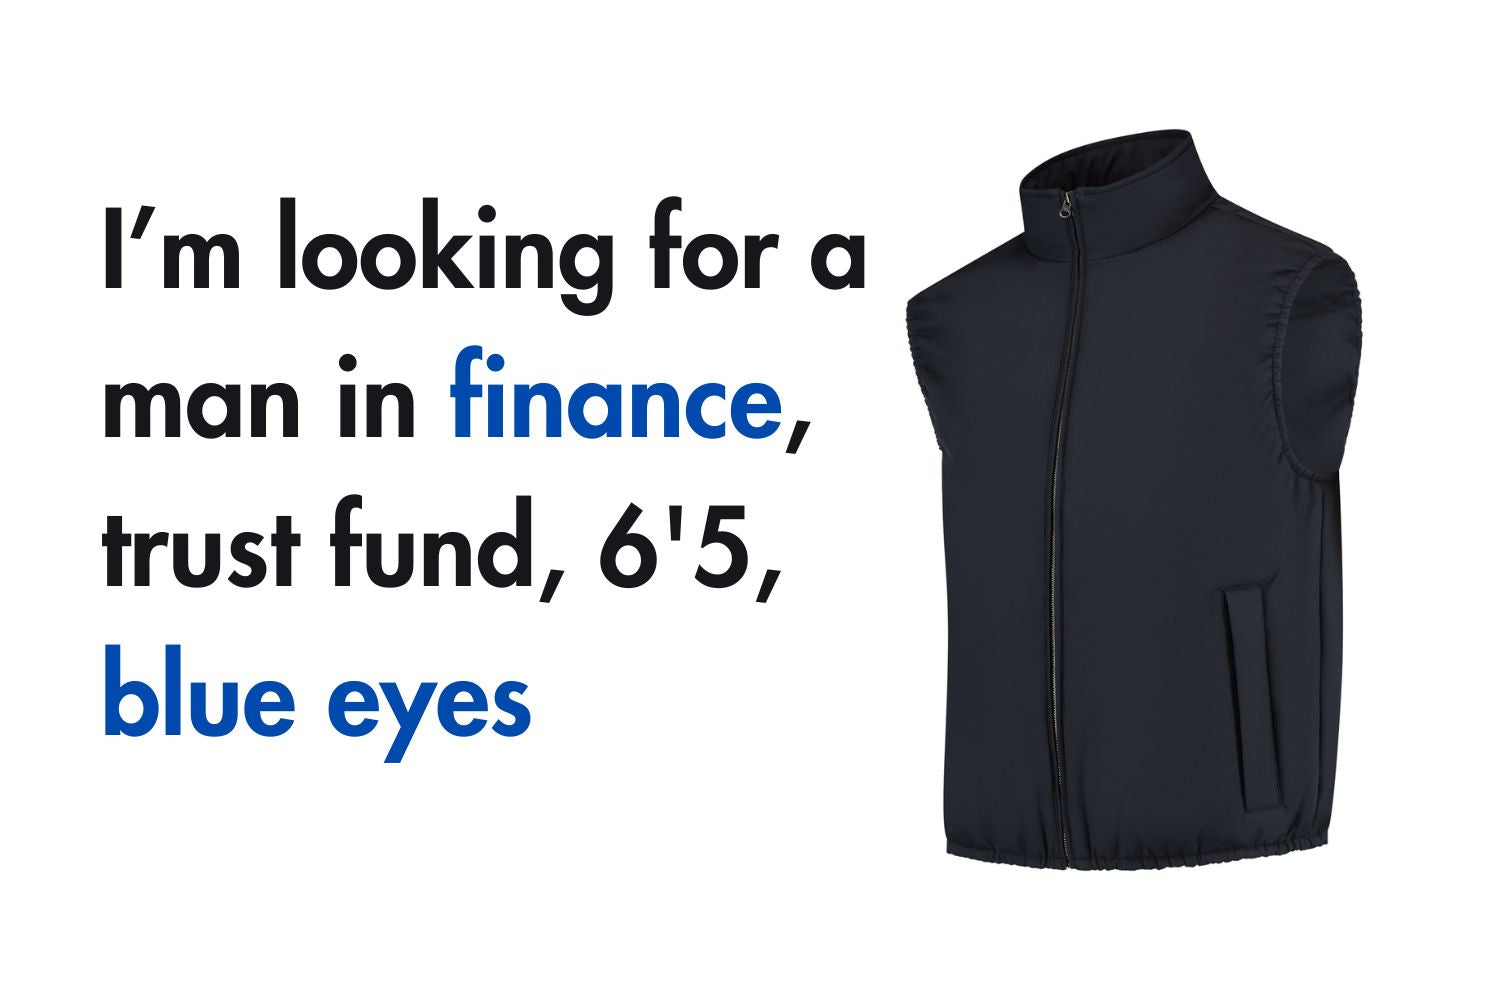 Finance, trust fund, 6'5, blue eyes